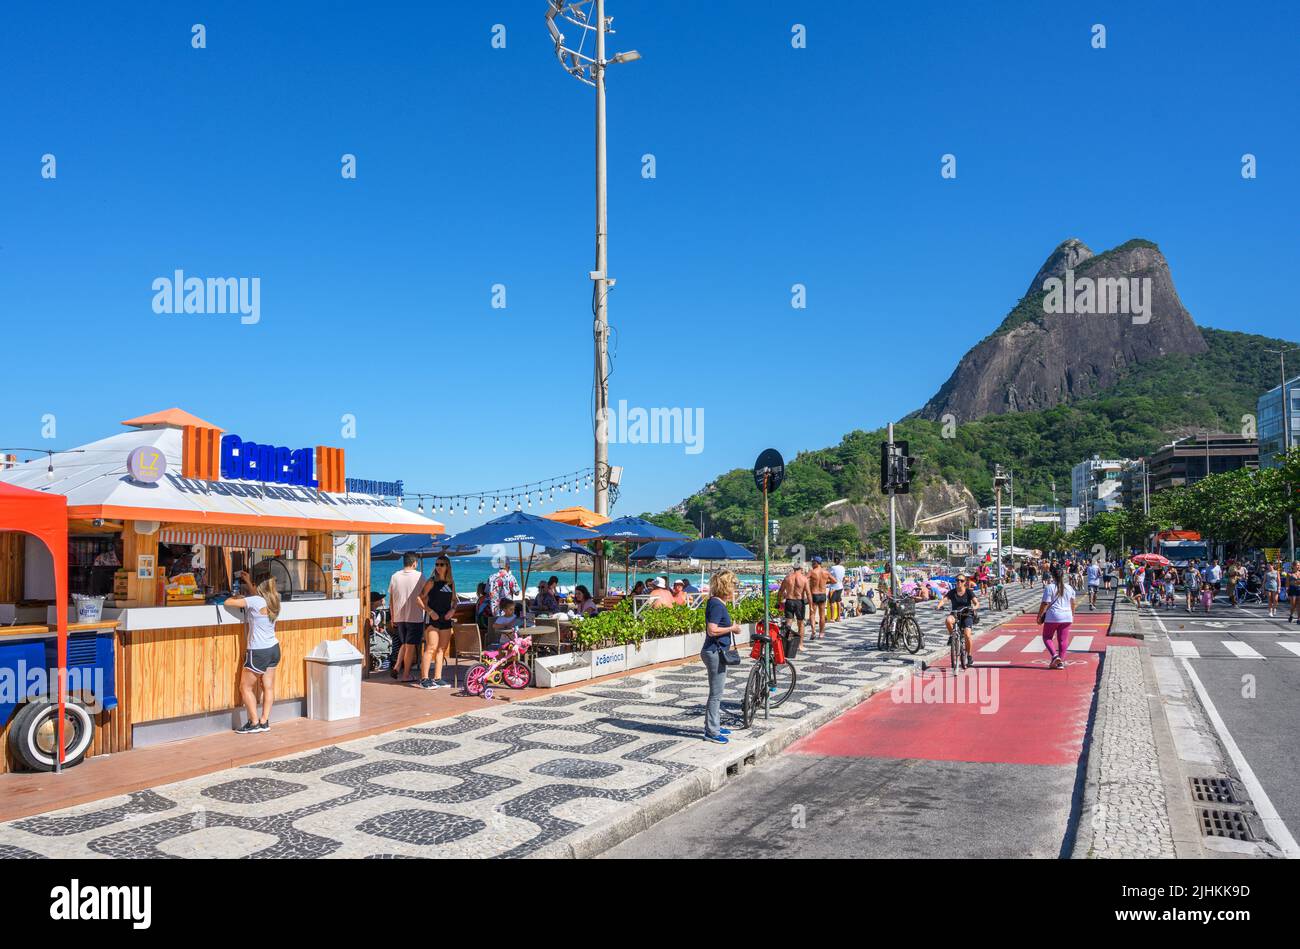 Kiosk an der Strandpromenade, Avenida Vieira Souto, Ipanema, Rio de Janeiro, Brasilien Stockfoto